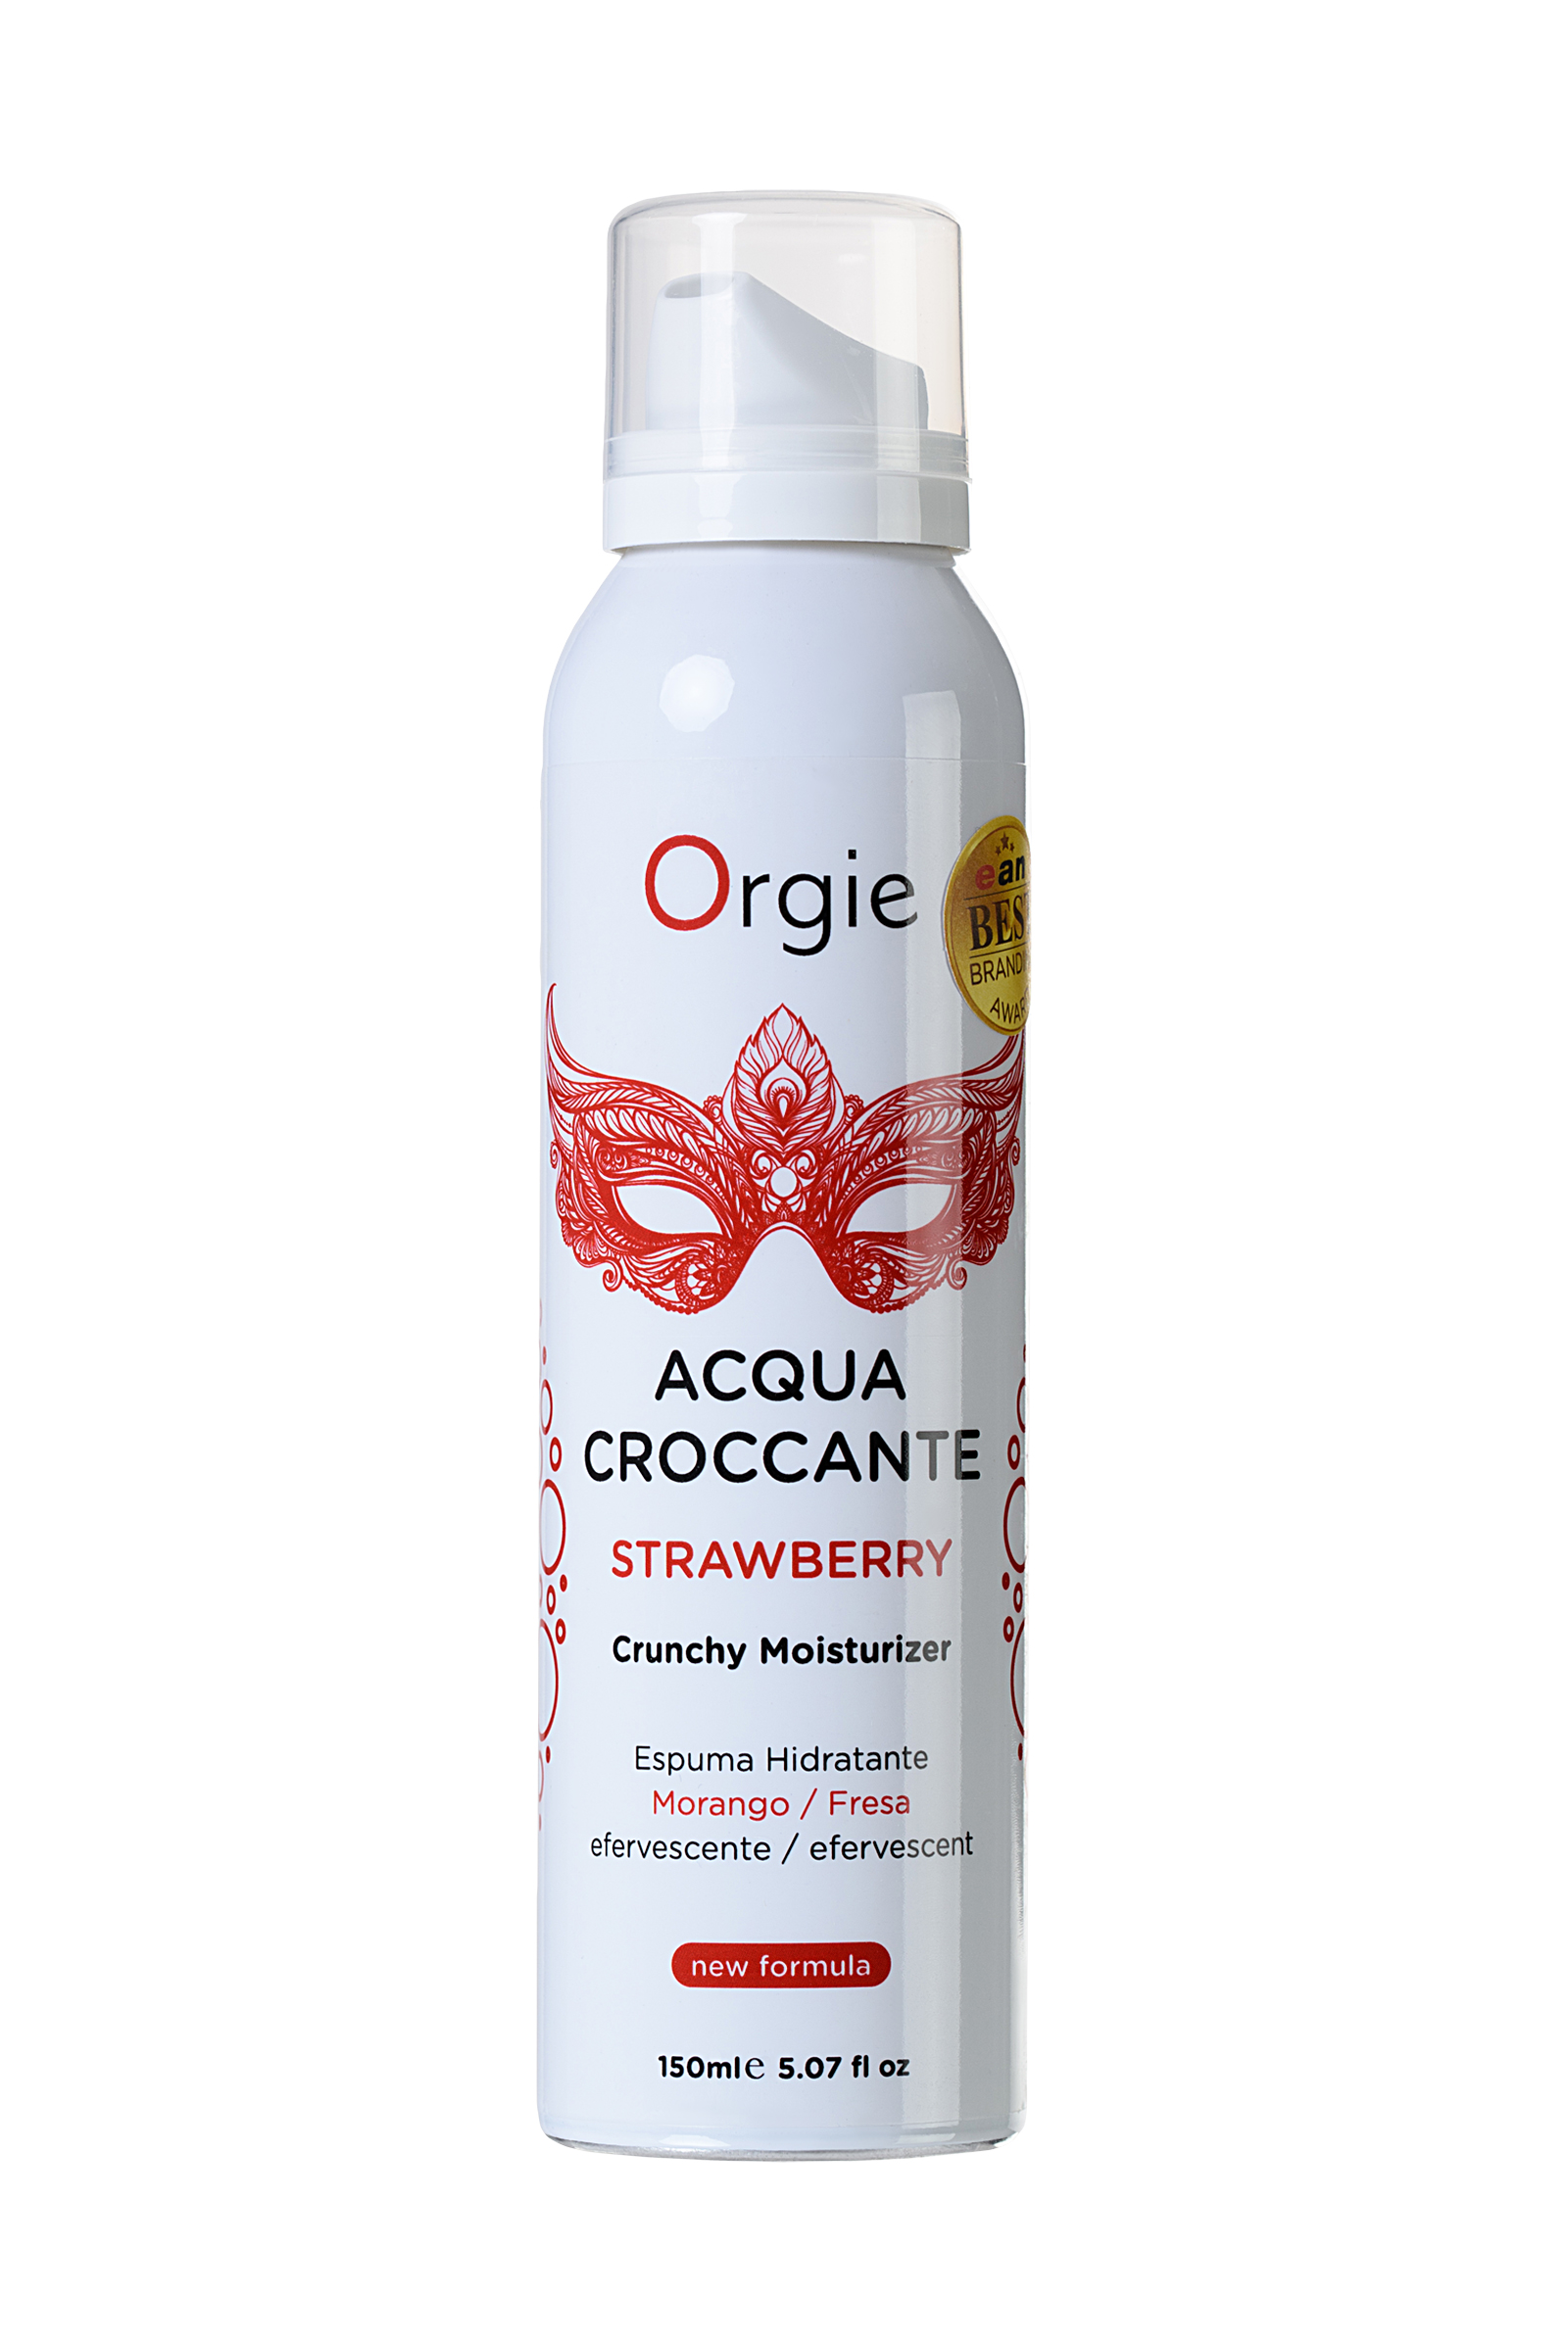 Шипучая увлажняющая пена Orgie Acqua Croccante для чувственного массажа, 150 мл. Фото N2